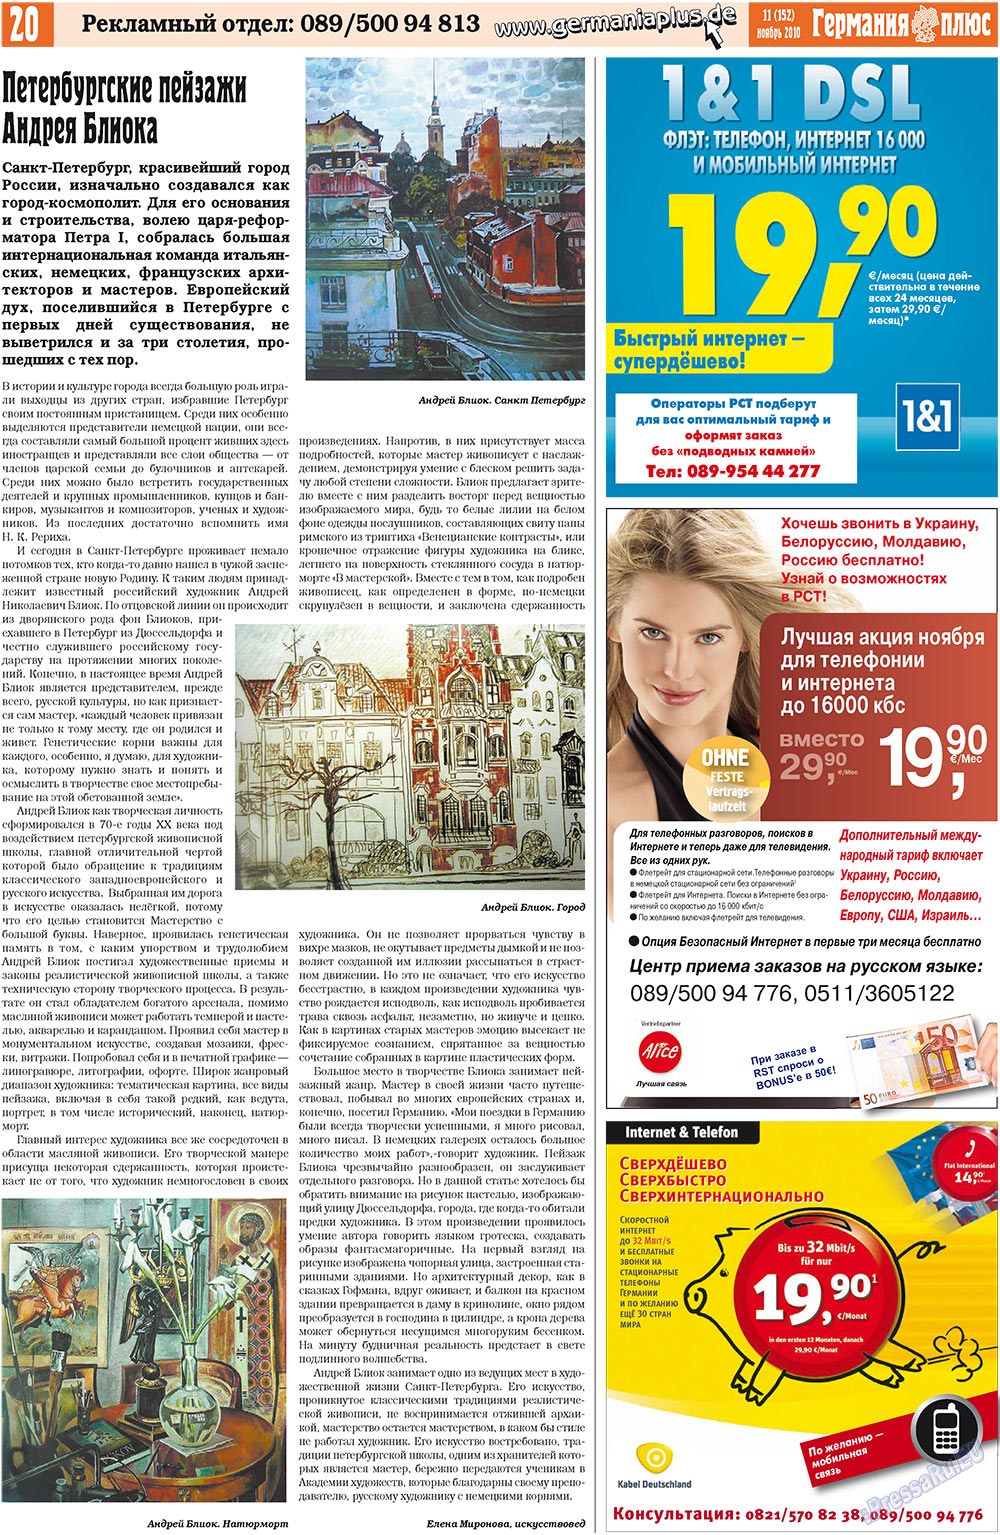 Германия плюс, газета. 2010 №11 стр.20